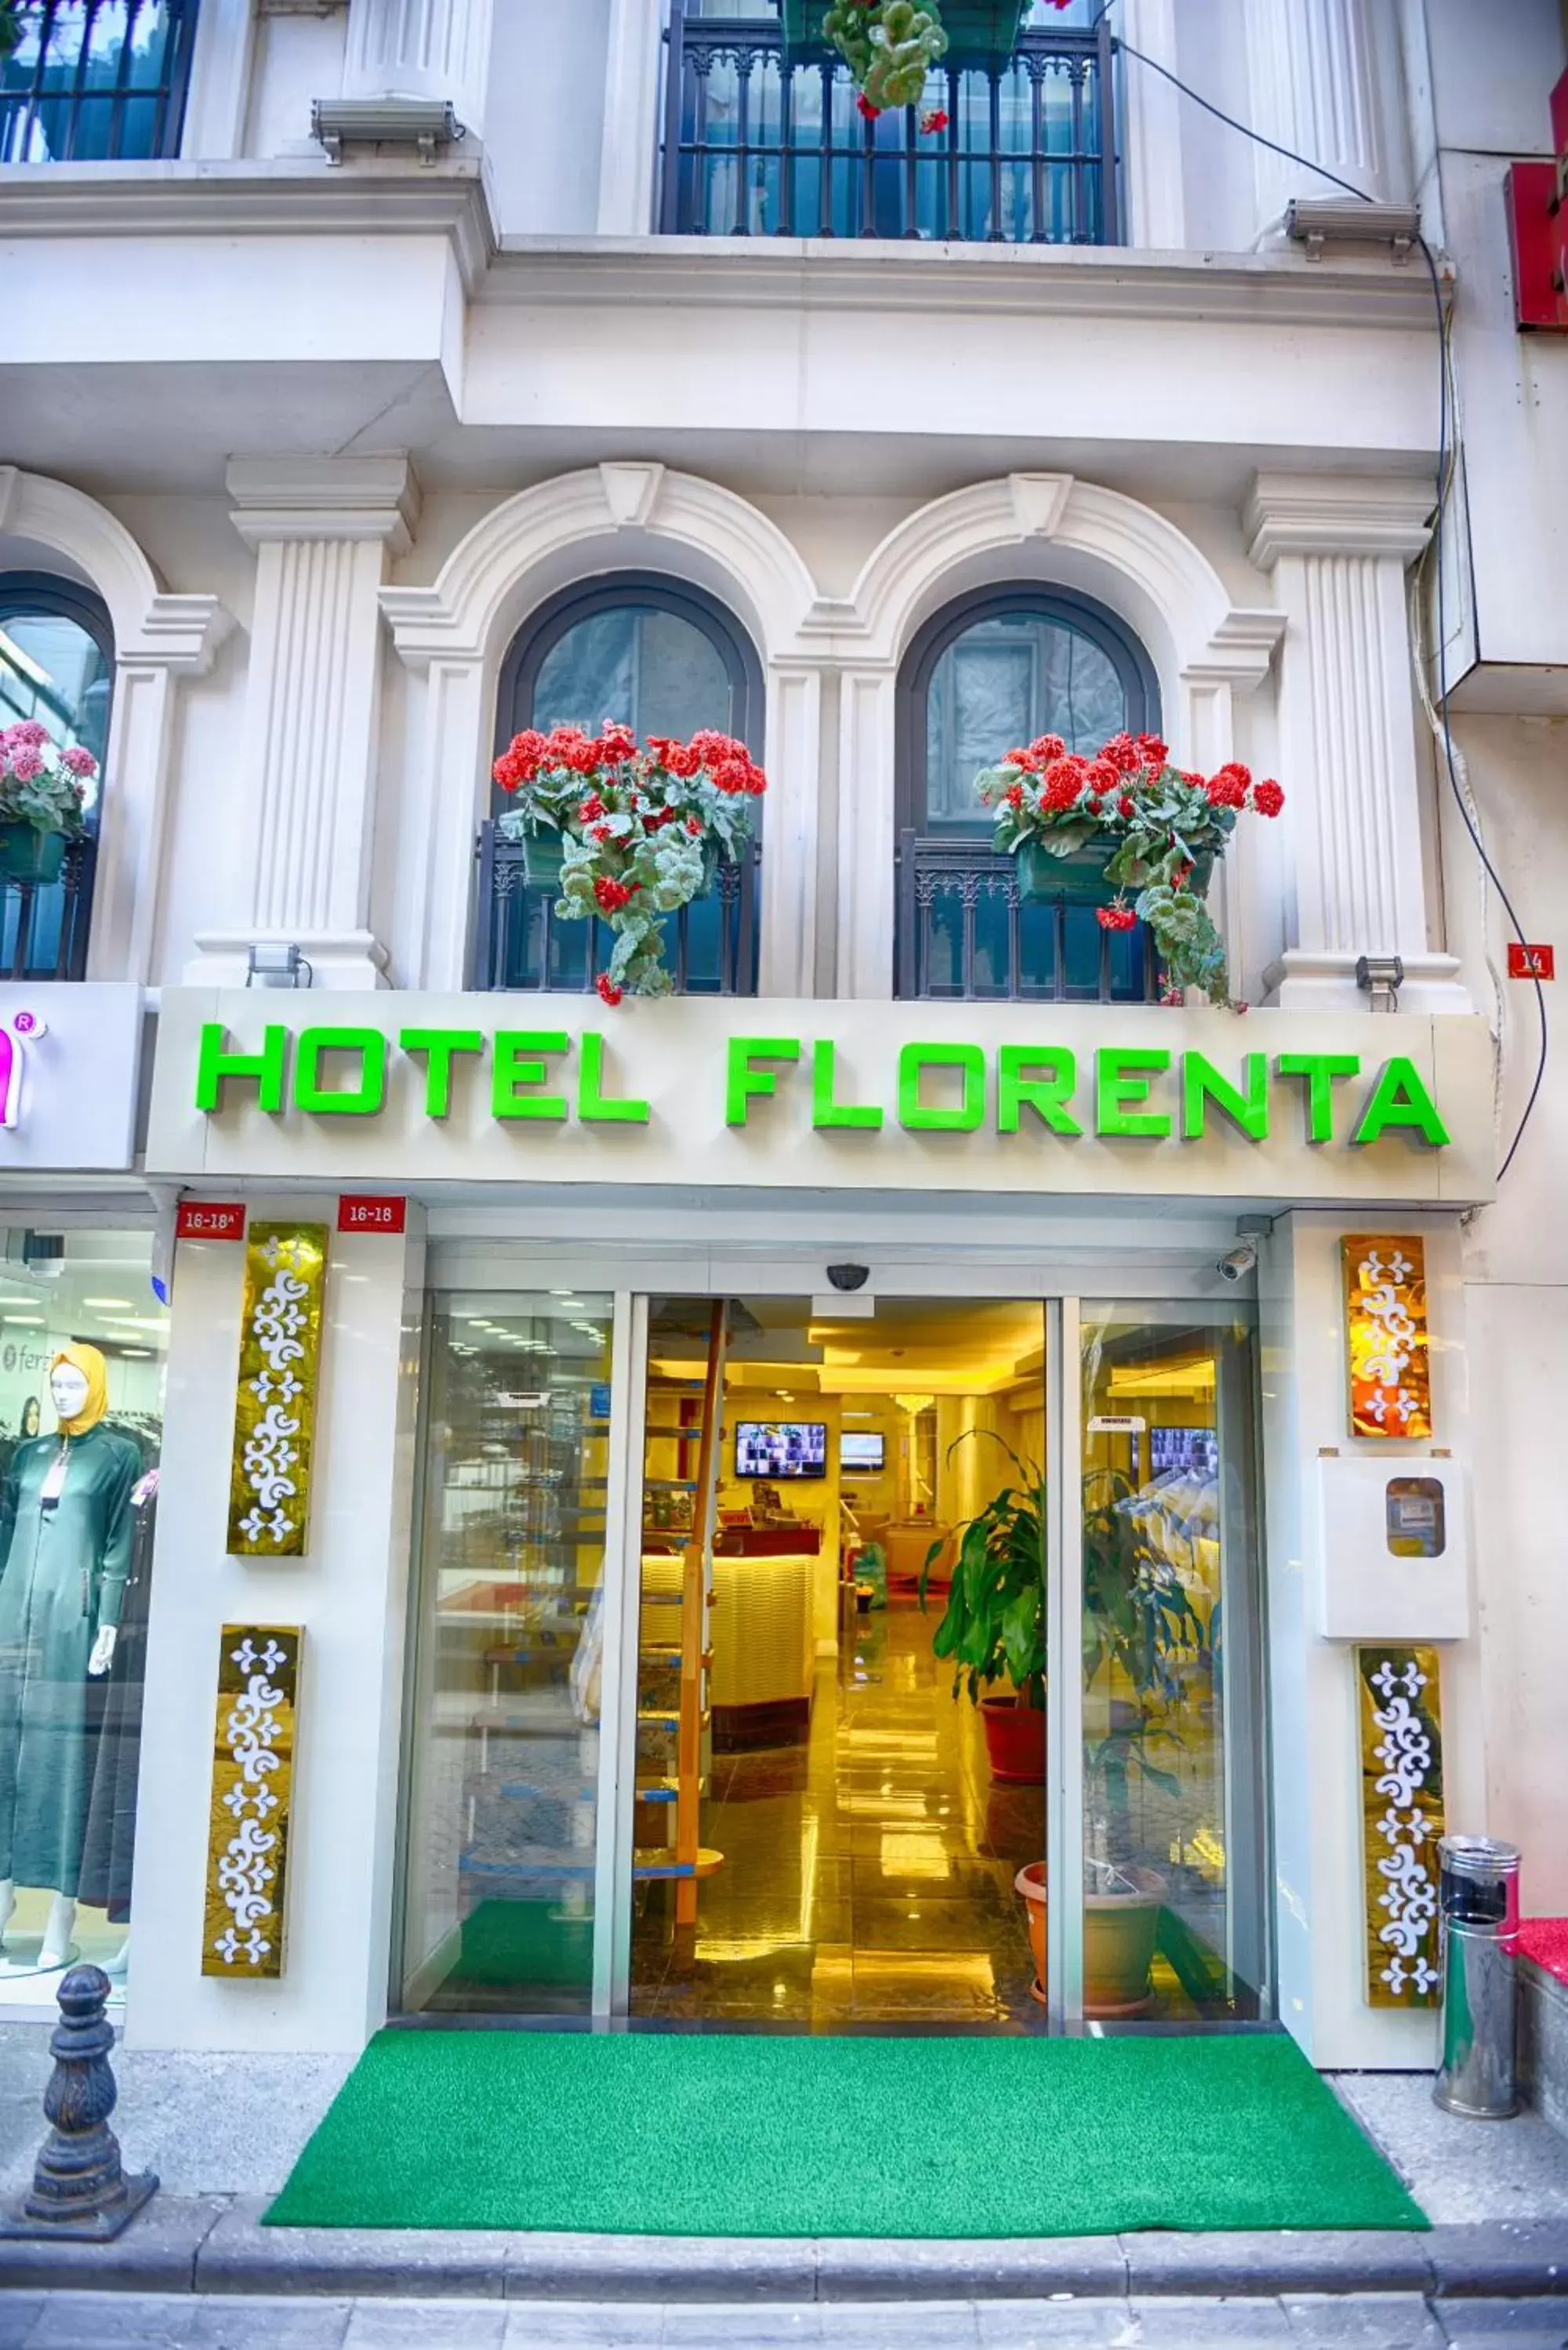 Facade/entrance in Florenta Hotel